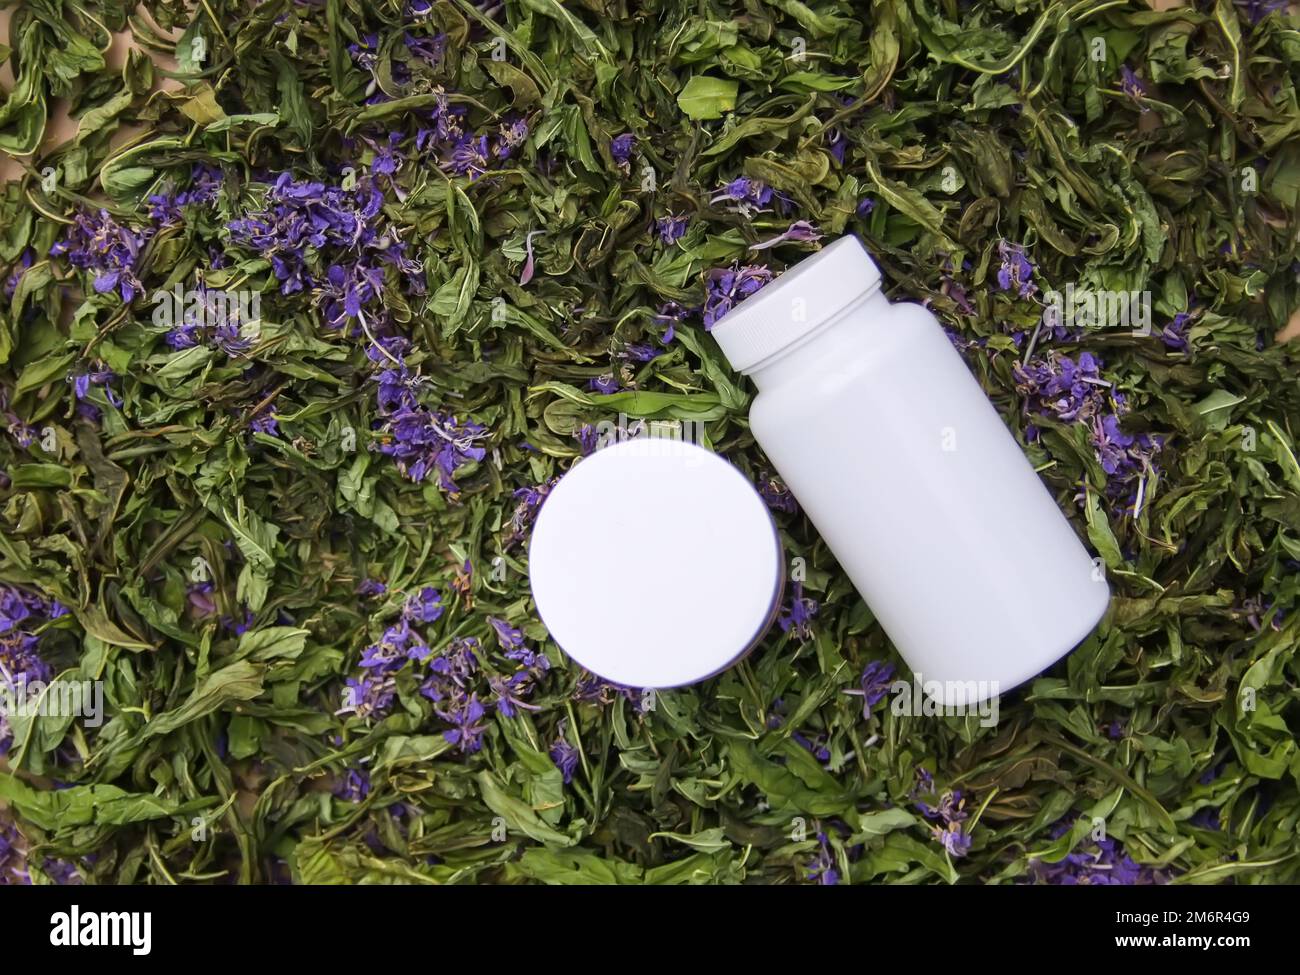 Weiße Kunststoffbehälter auf getrockneten Blüten der Pflanze Blooming sally, Epilobium angustifolium, Fireweed oder Rosebay Willowherb. Stockfoto